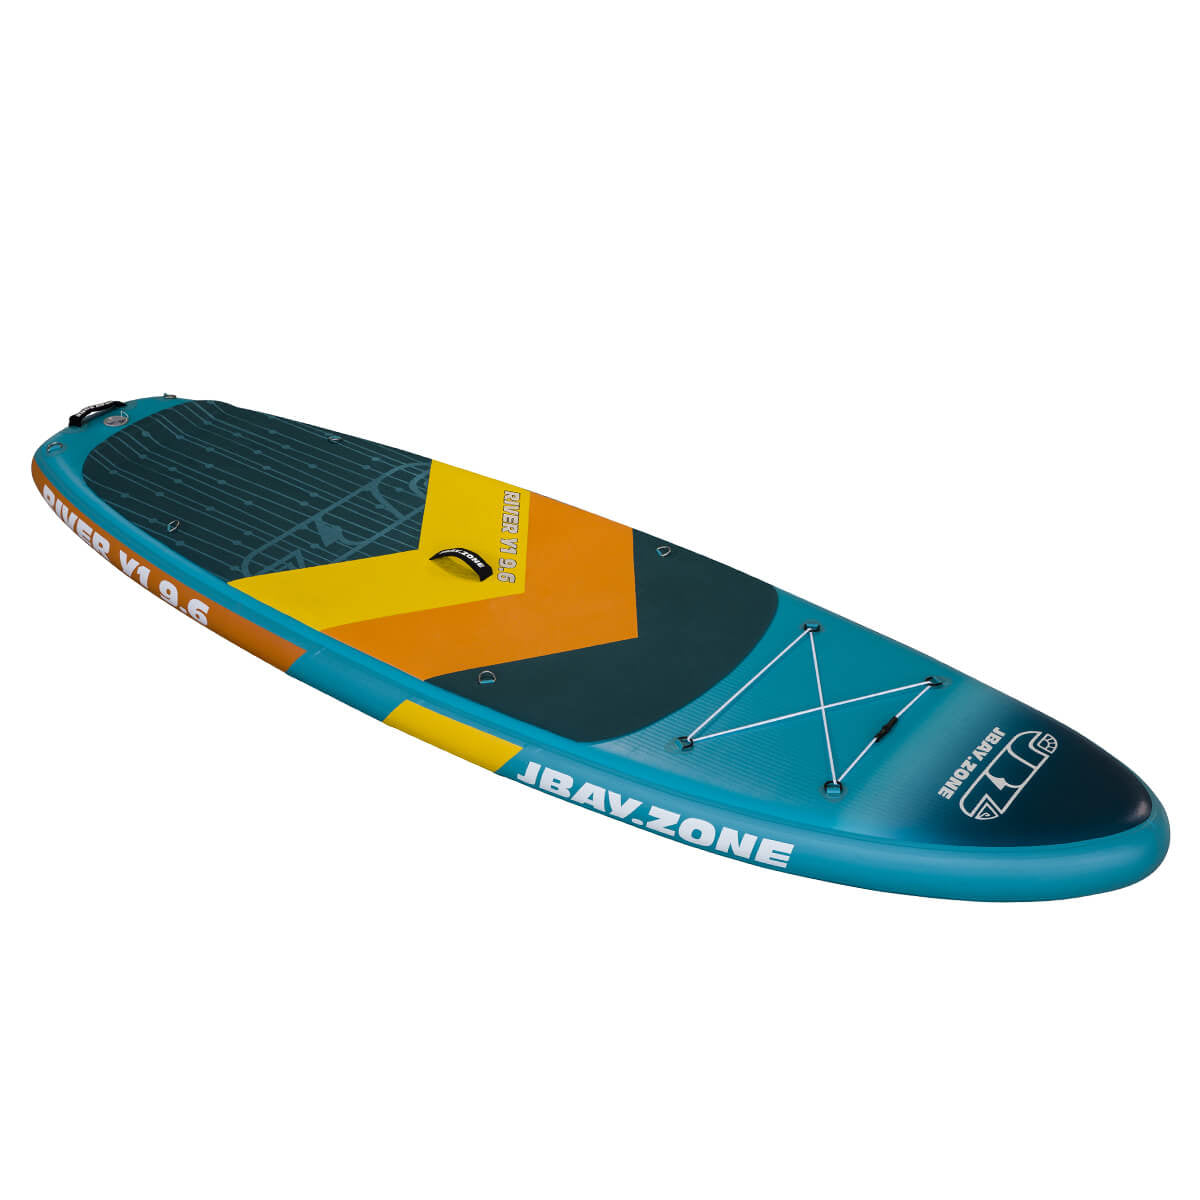 Paddle Board Jbay.Zone River Y1